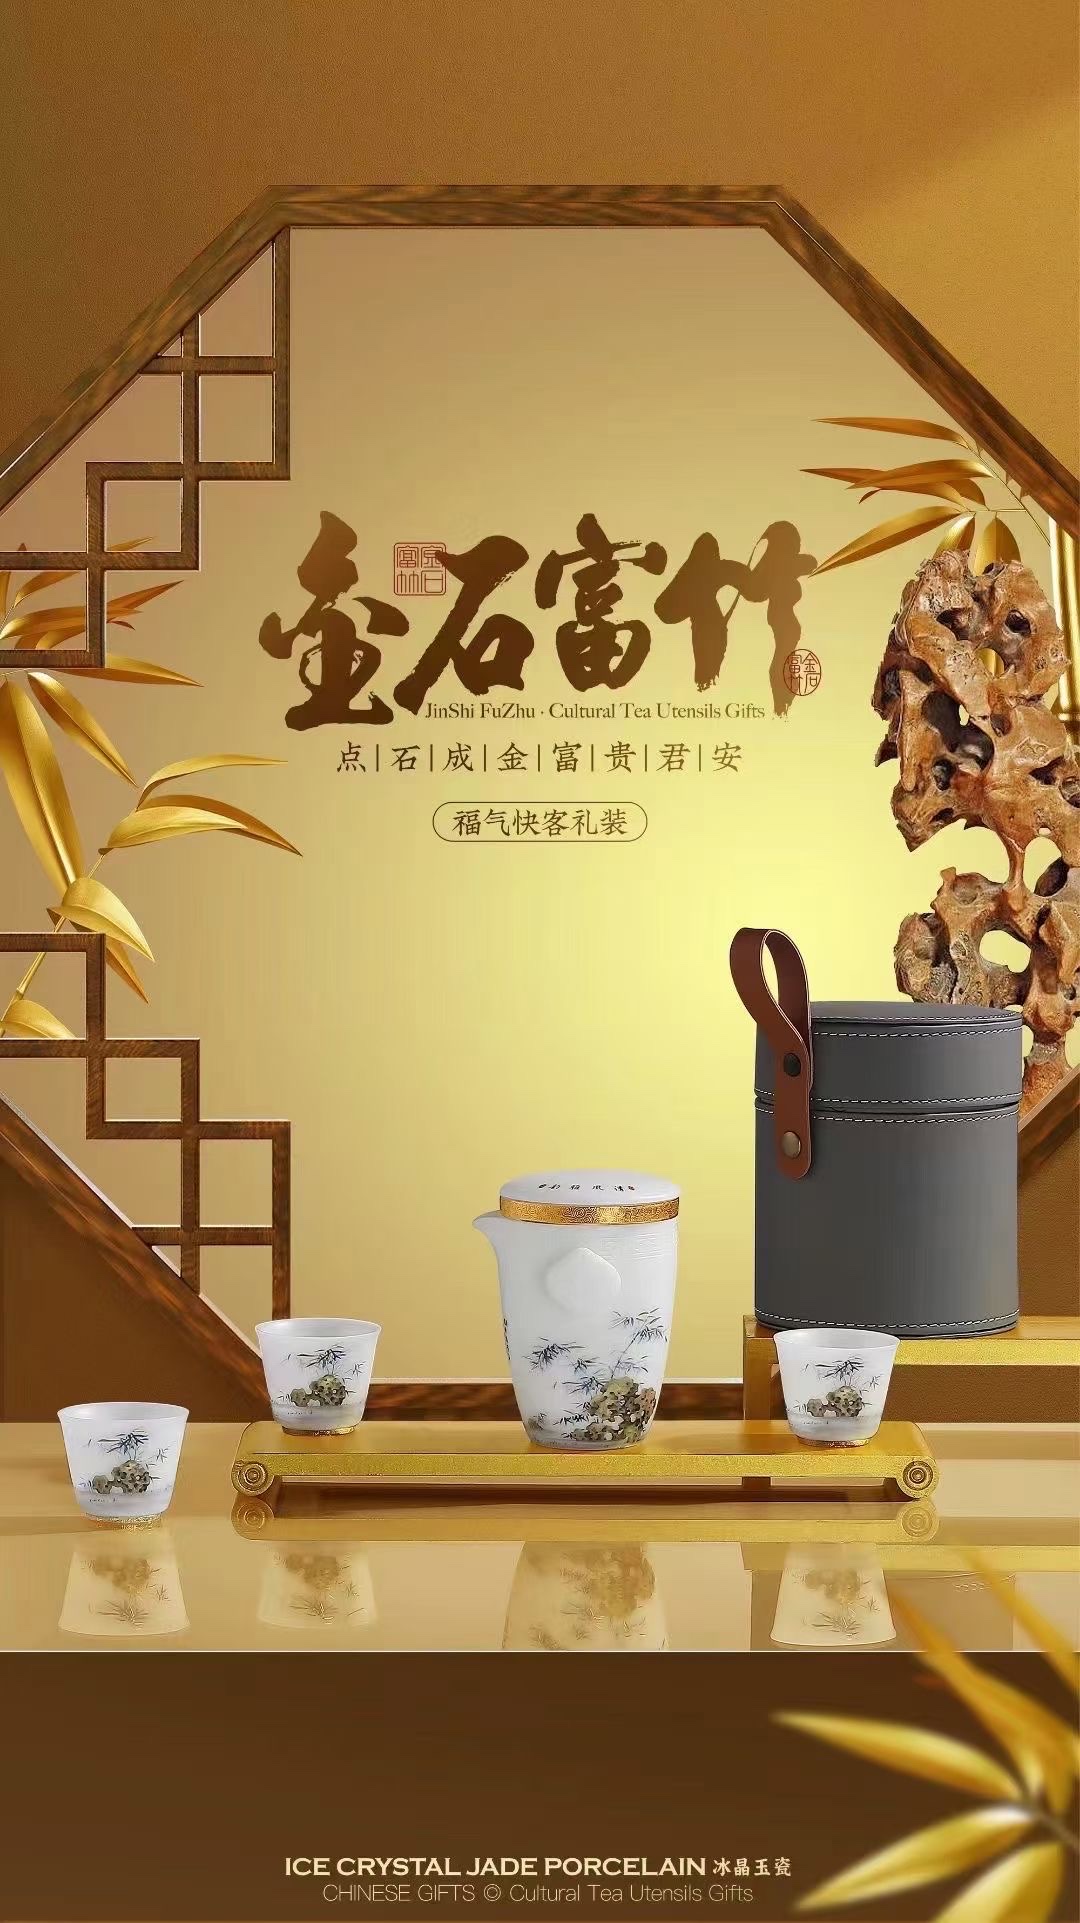 金石富竹旅行包茶具套装 便携式旅行茶具 精致陶瓷茶具 享受茶道的乐趣茶具